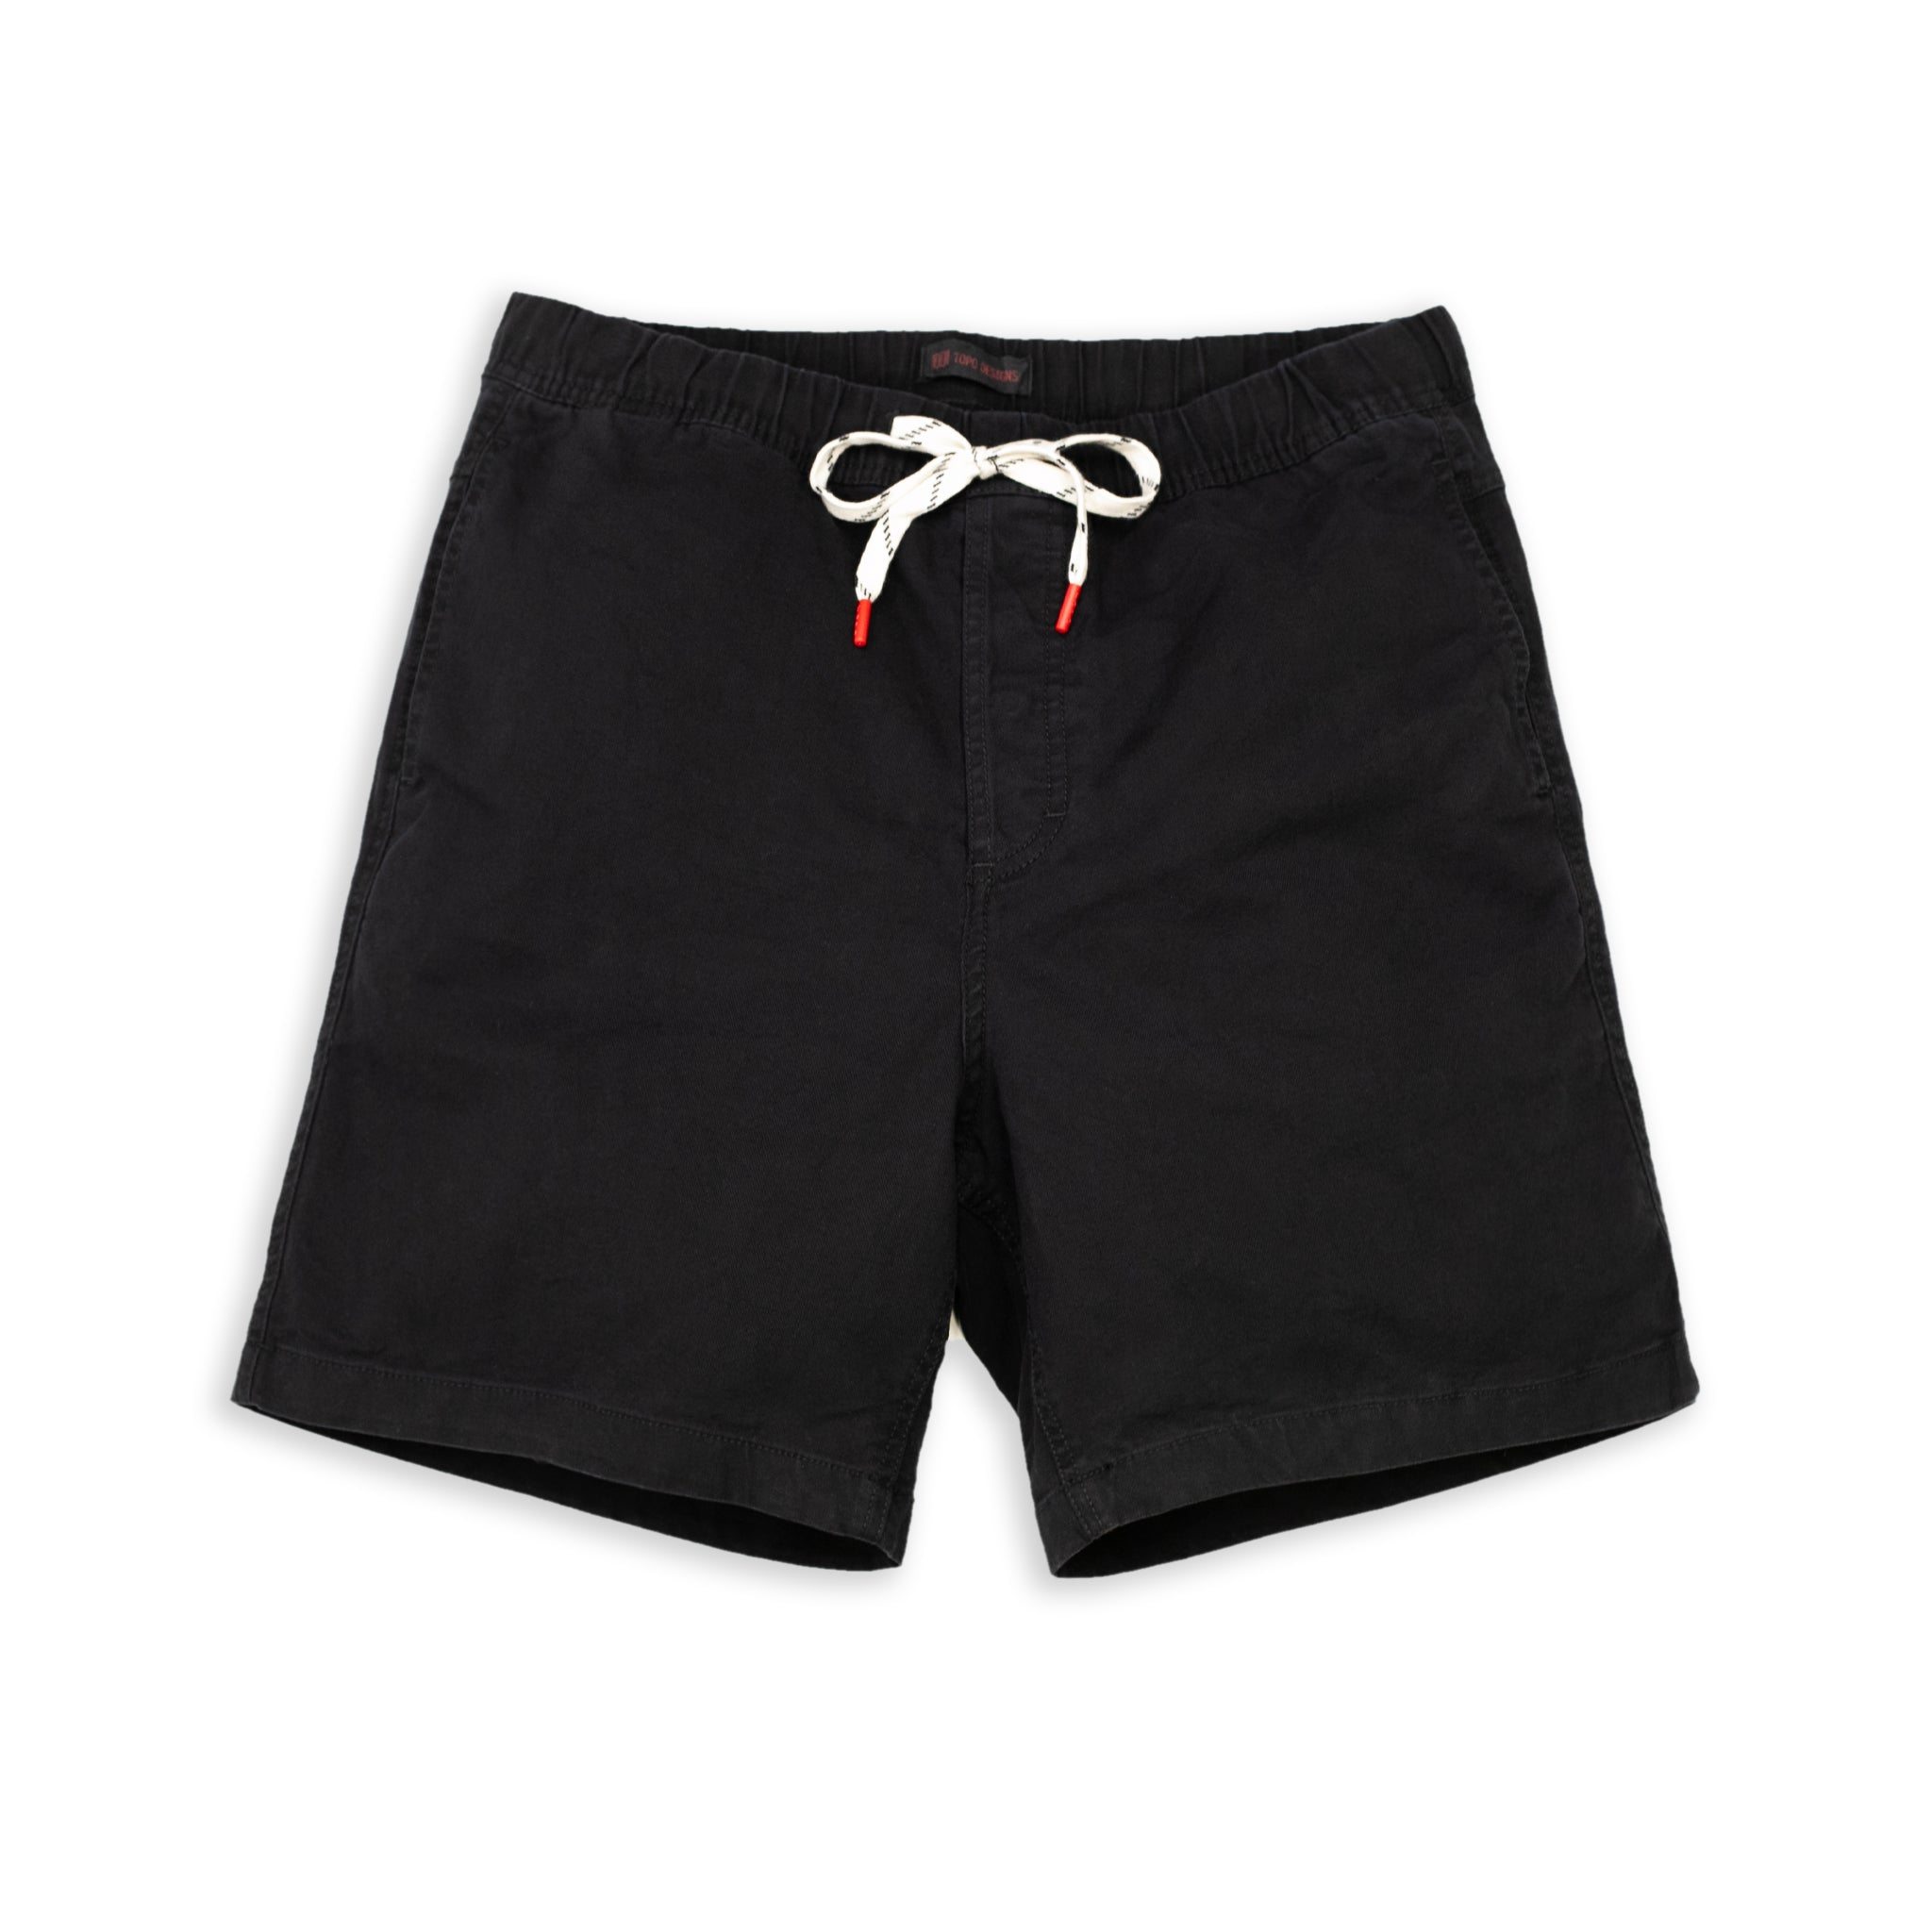 Dirt Shorts - Men's - Black / Medium